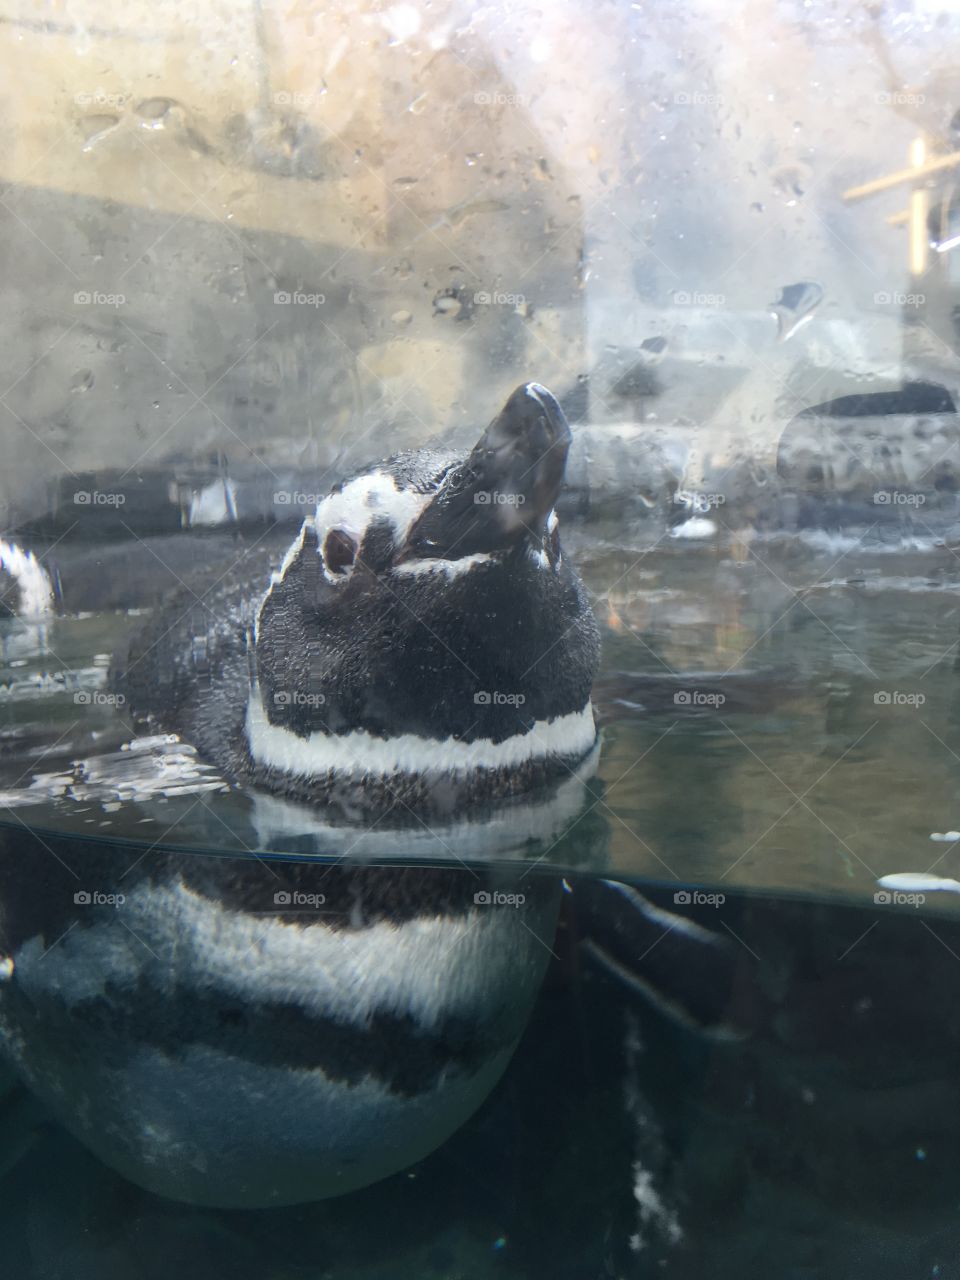 Curious penguin of the Pacific Aquarium in CA.